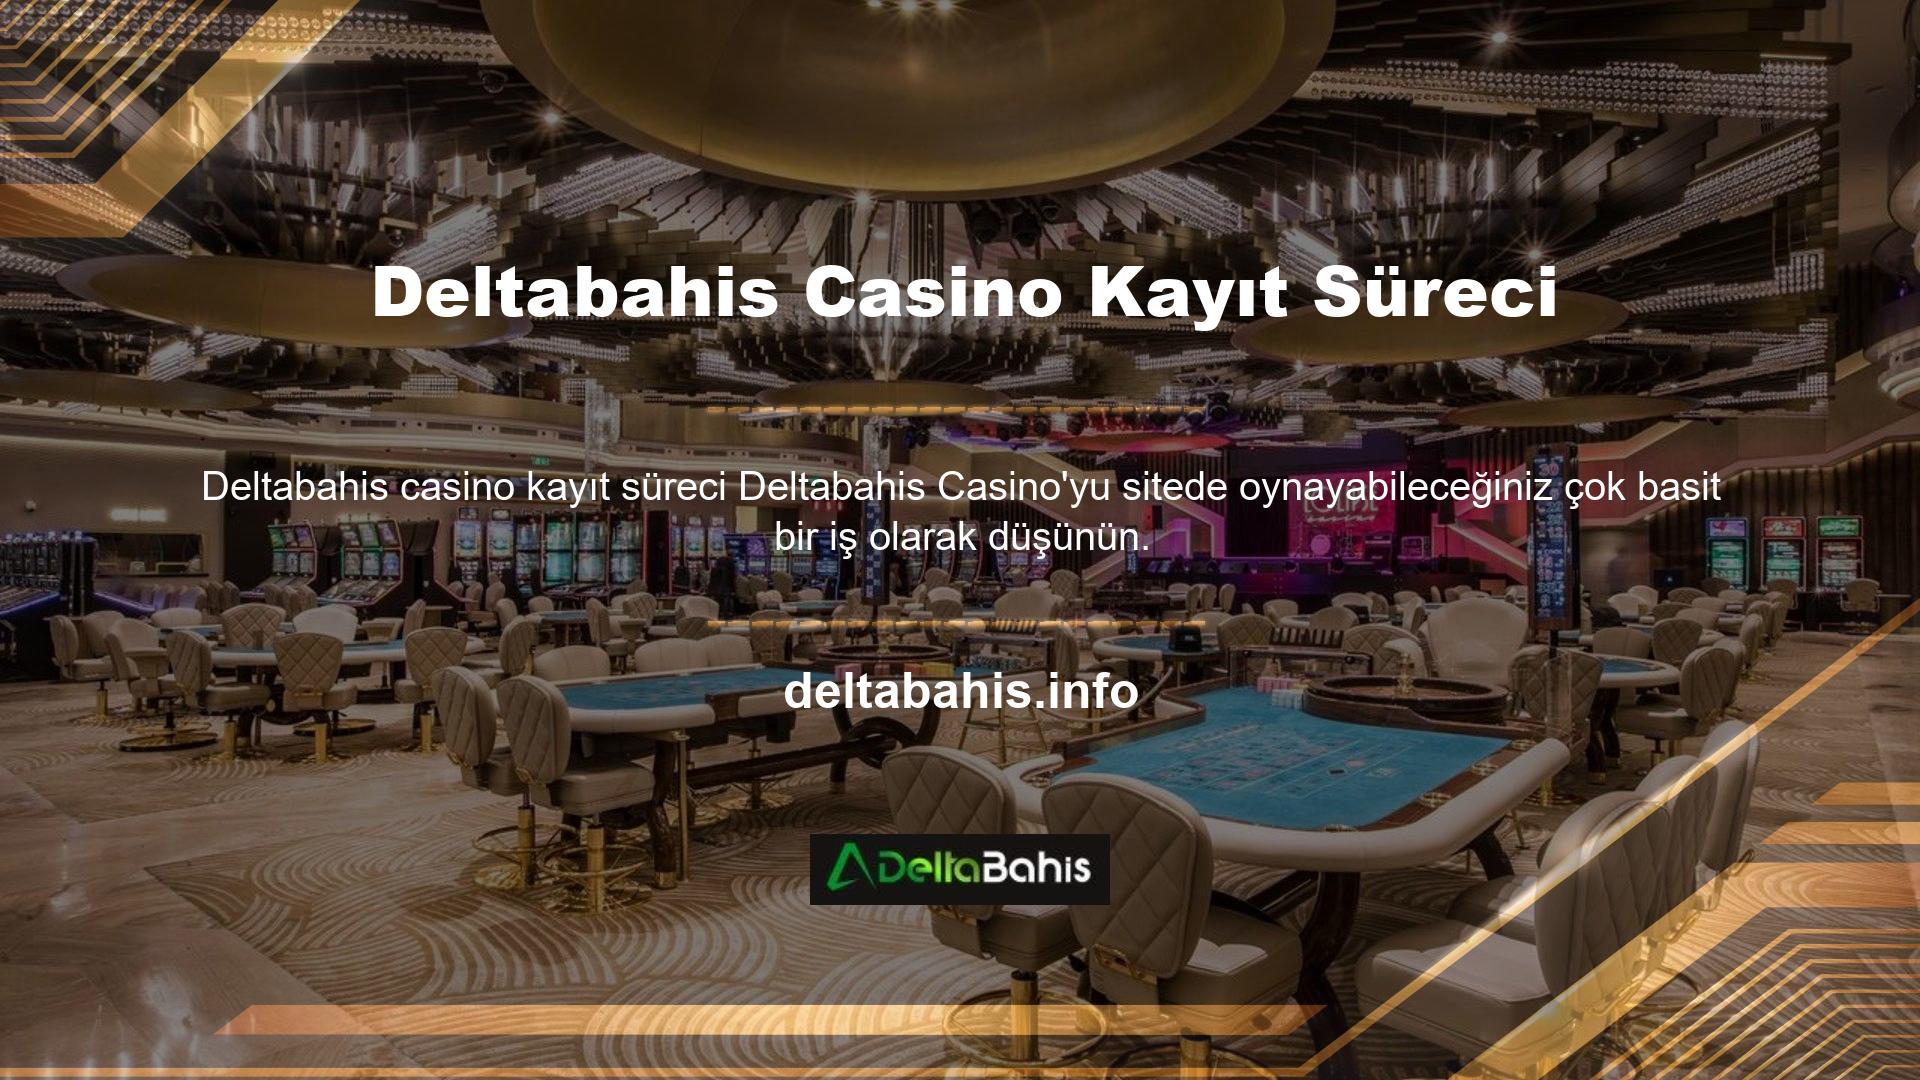 Yatırımcıların sitede oyun oynayabilmesi için öncelikle Deltabahis Casino'nun kayıt işlemi yoluyla siteye üye olmaları gerekmektedir